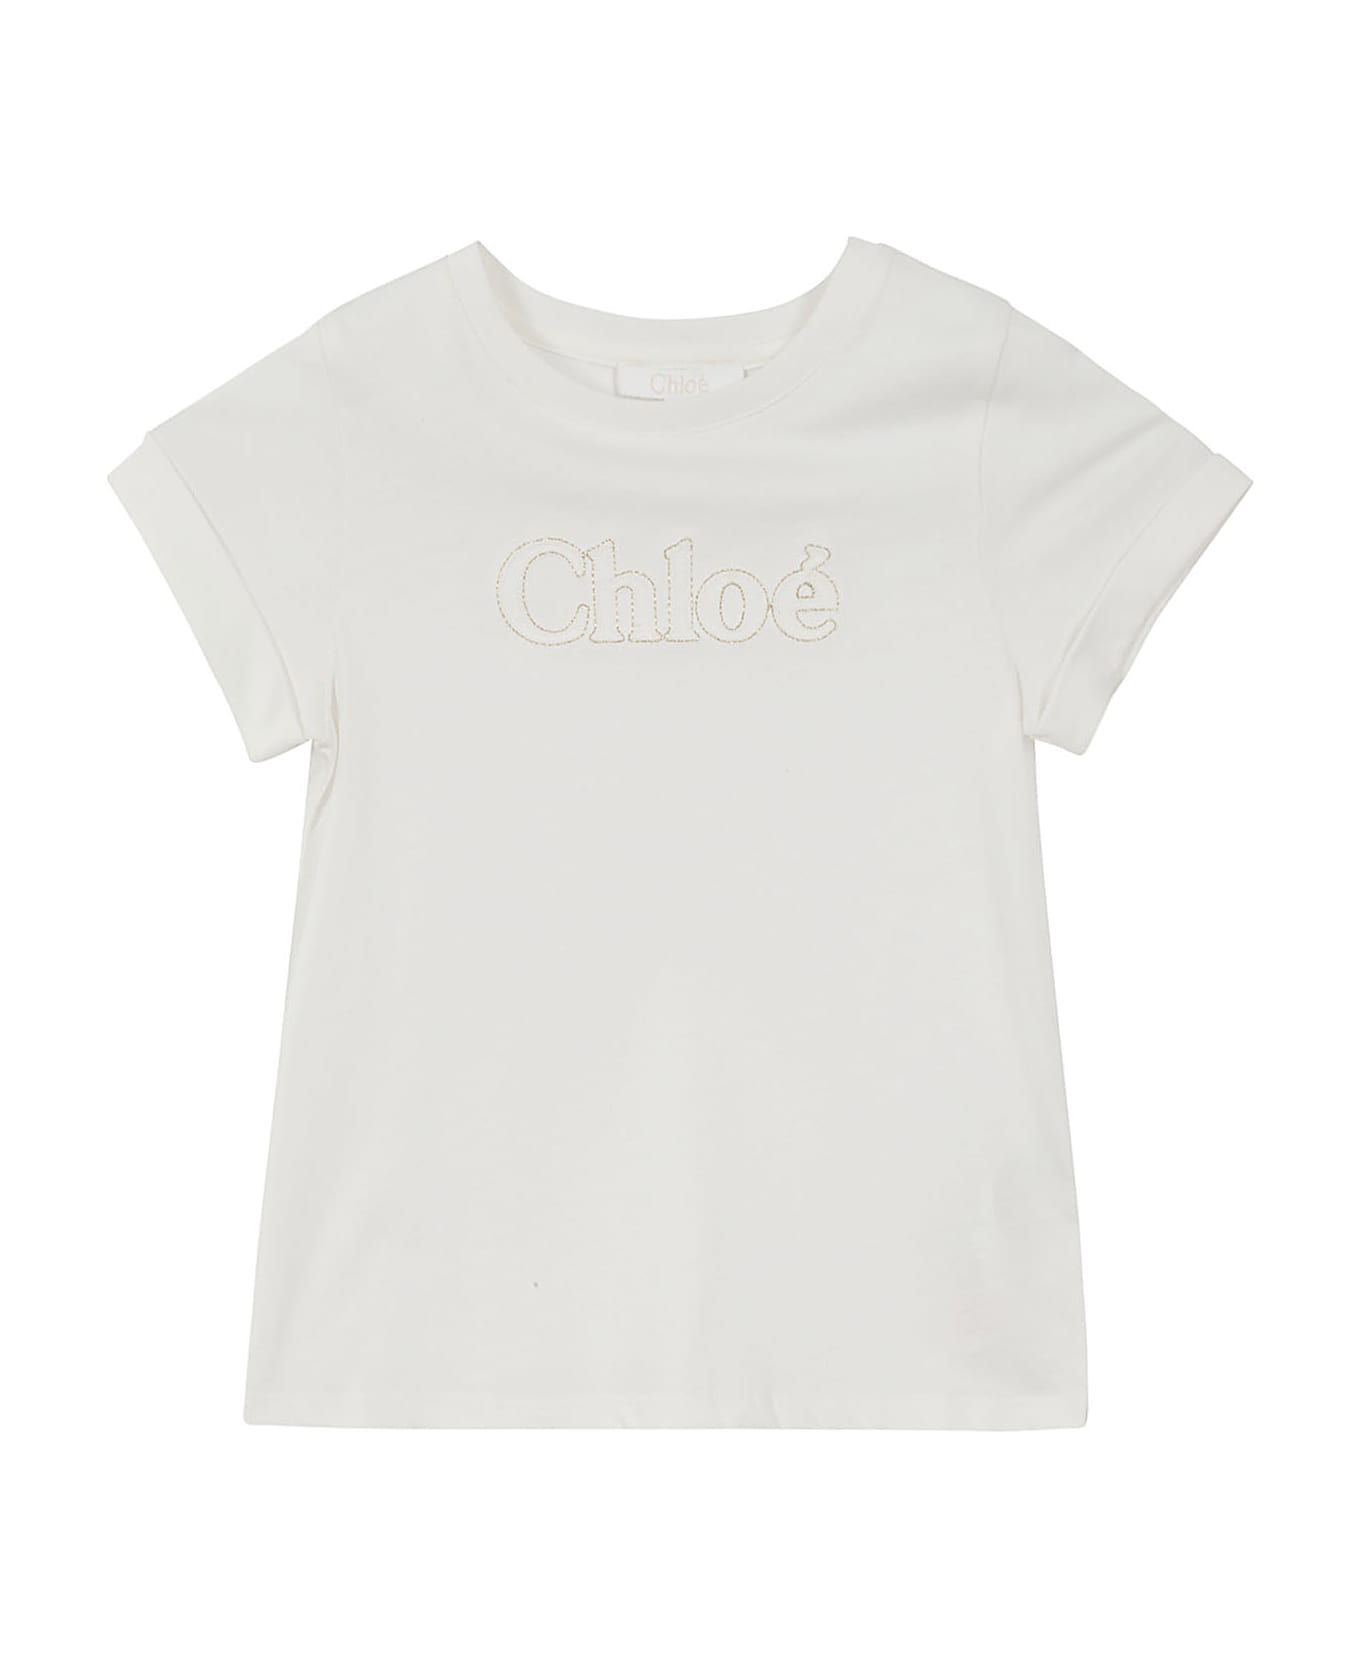 Chloé Tee Shirt - Bianco Sporco